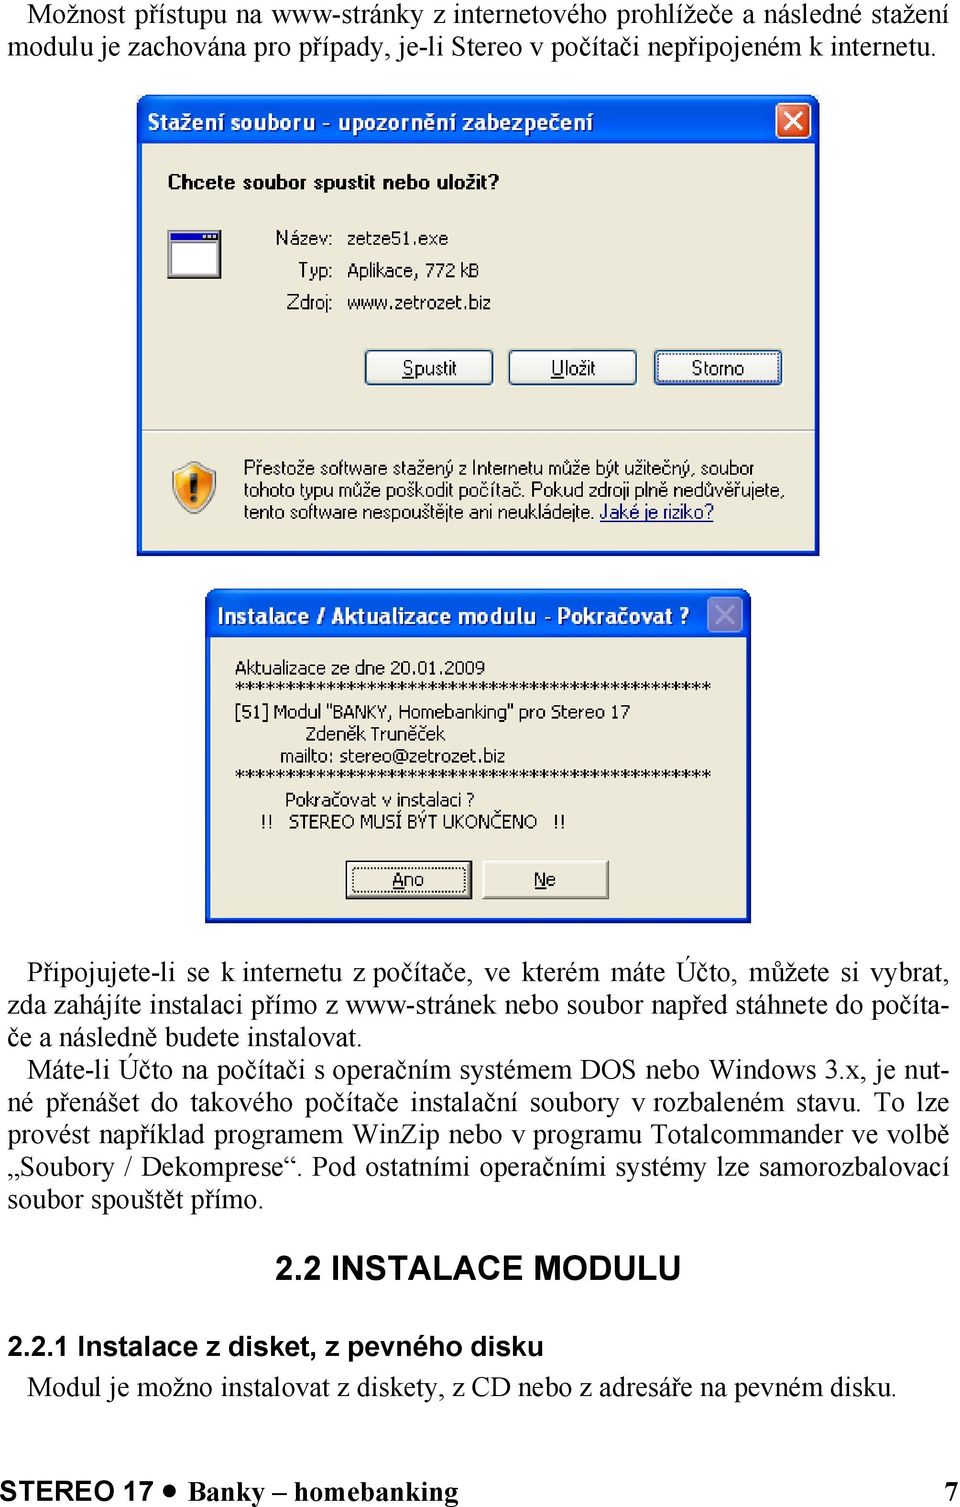 Máte-li Účto na počítači s operačním systémem DOS nebo Windows 3.x, je nutné přenášet do takového počítače instalační soubory v rozbaleném stavu.